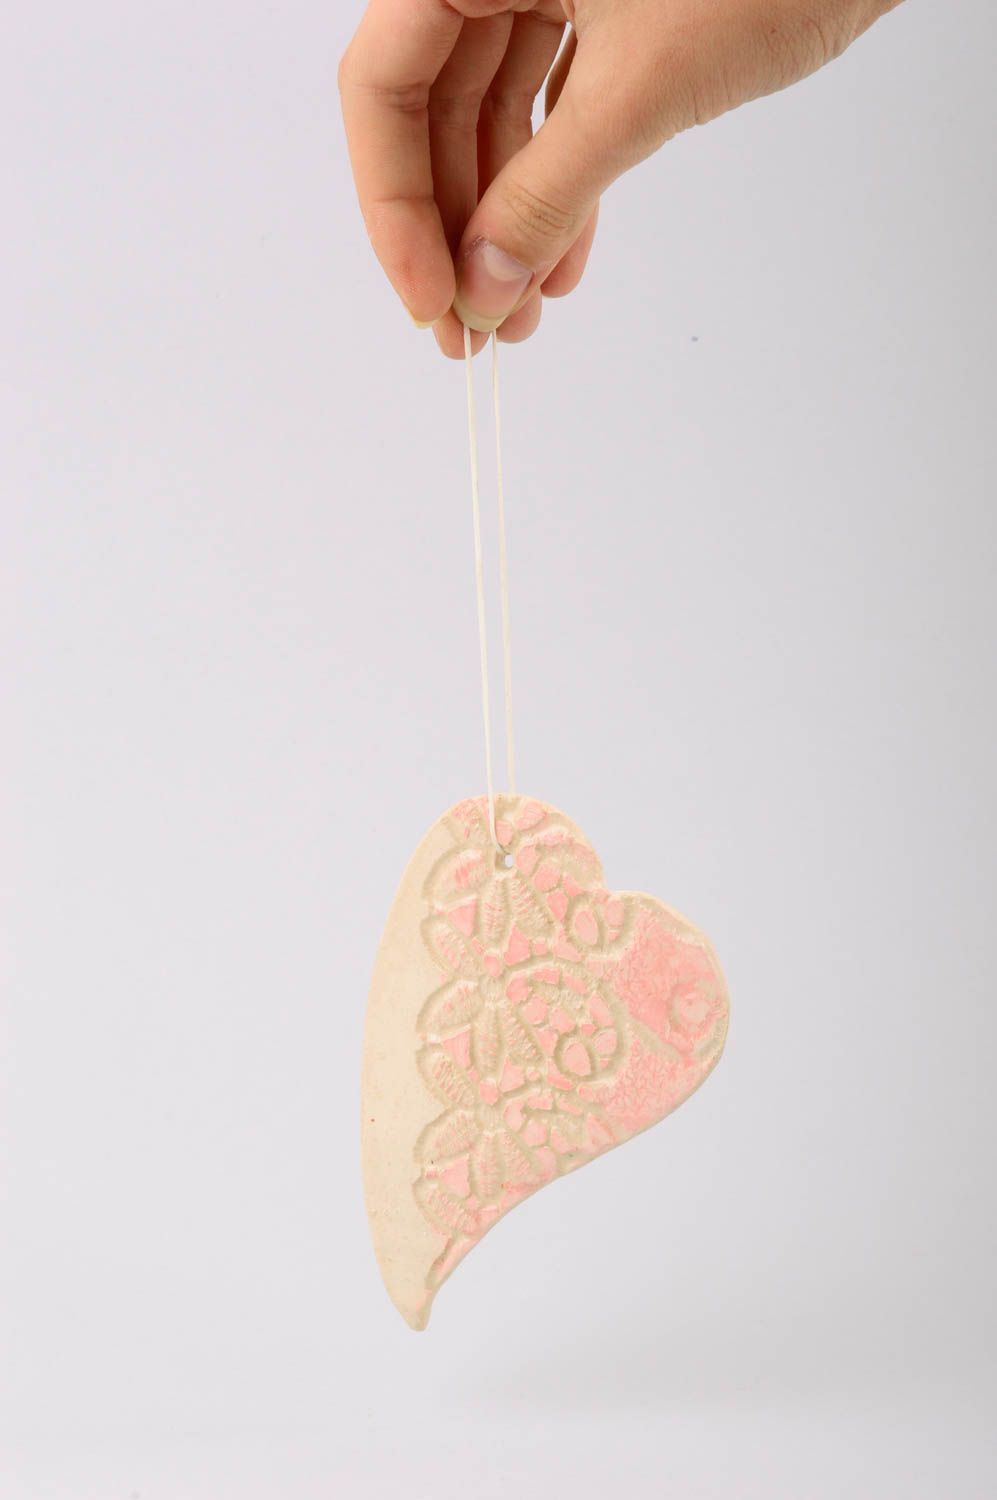 Панно на стену подарок ручной работы предмет декора из глины Розовое сердце фото 2